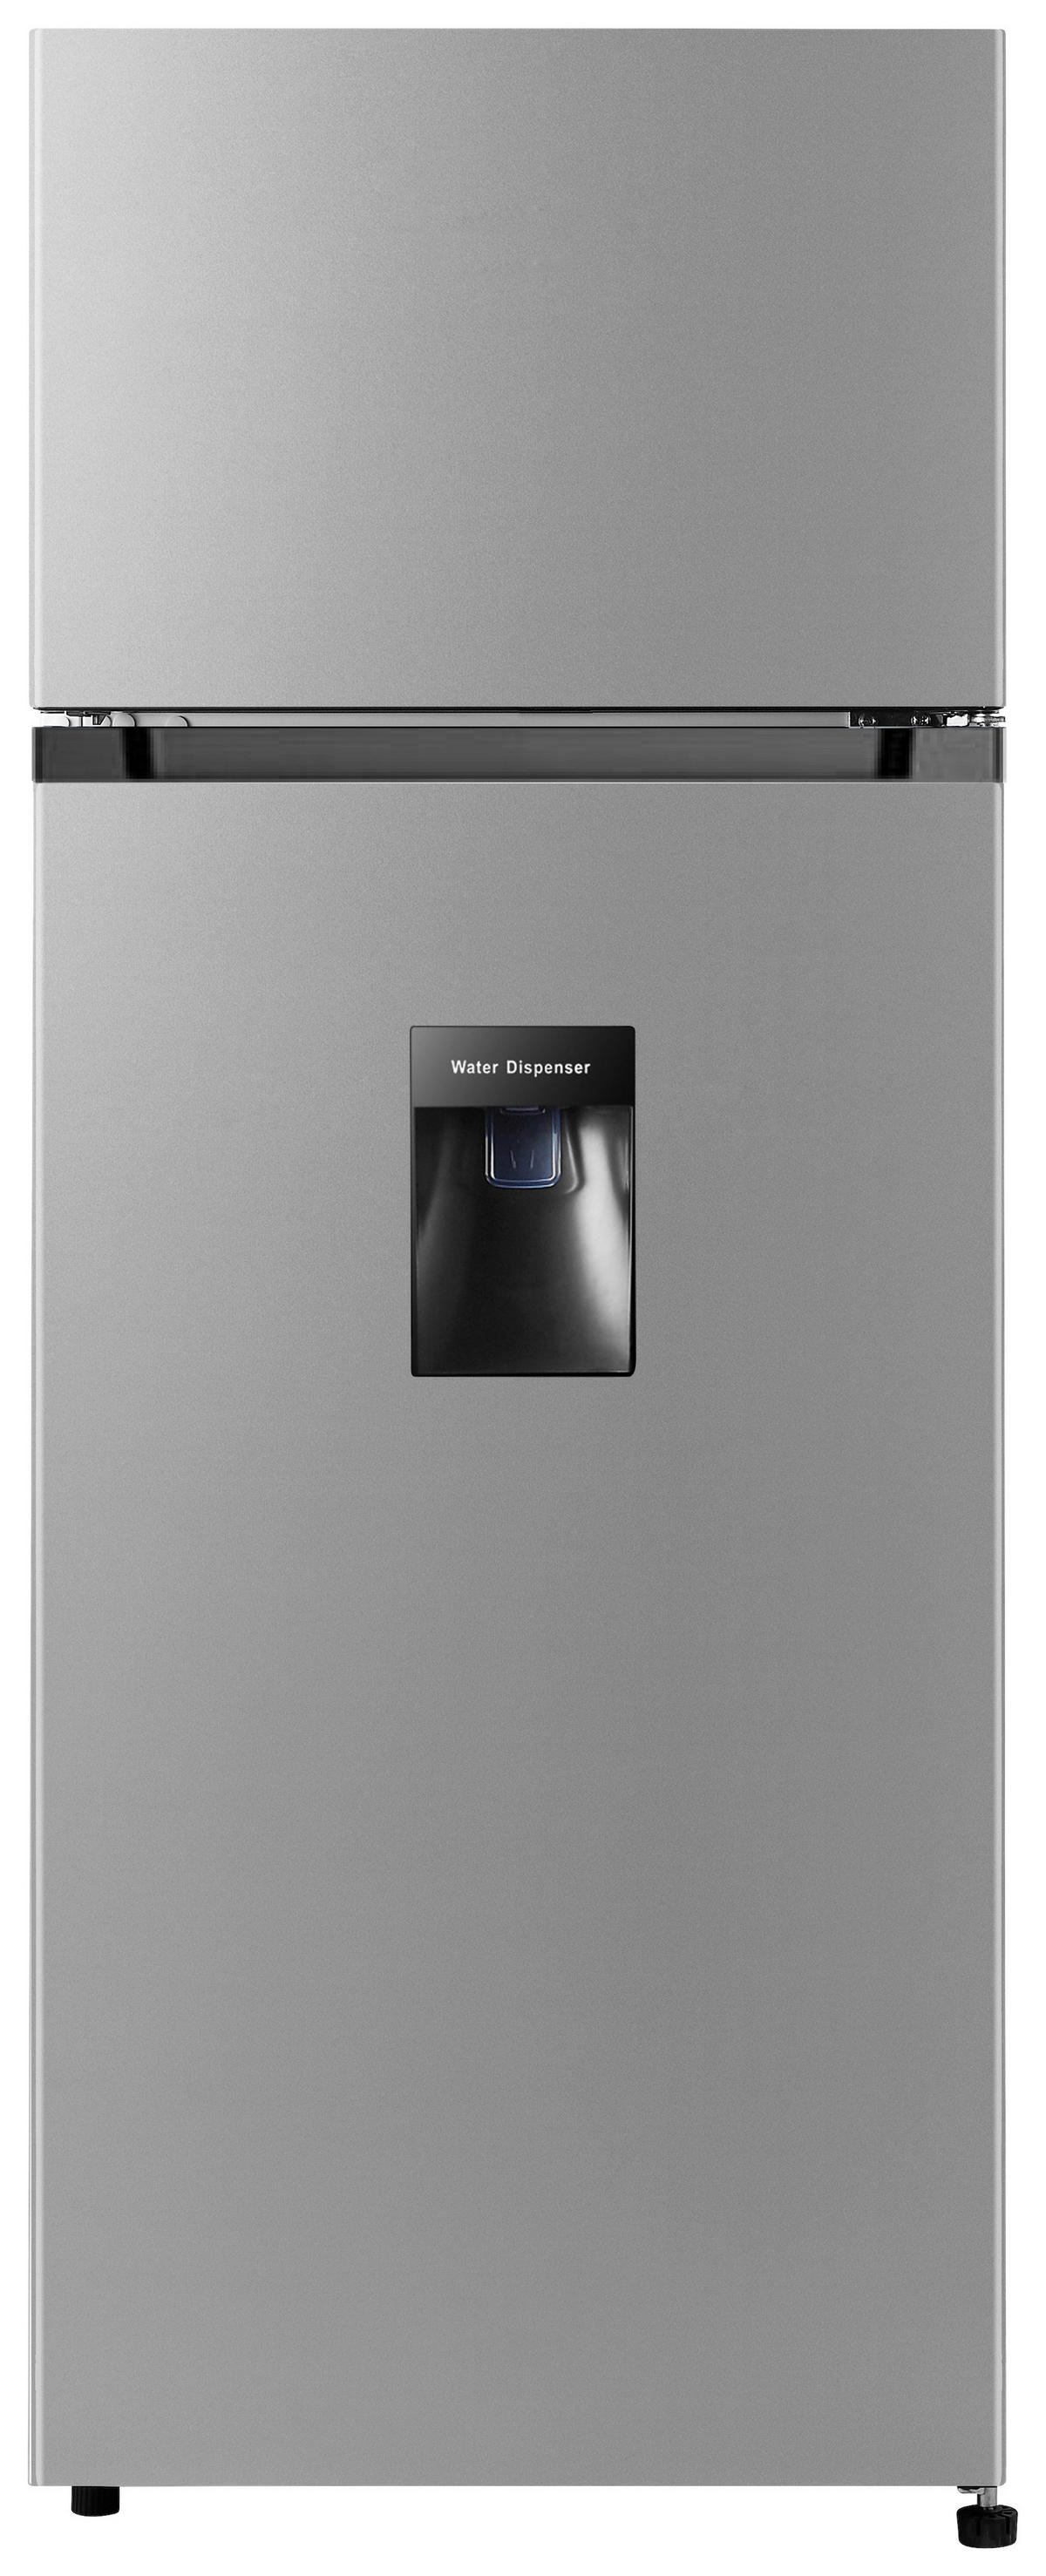 Kühlschränke  online bei POCO kaufen